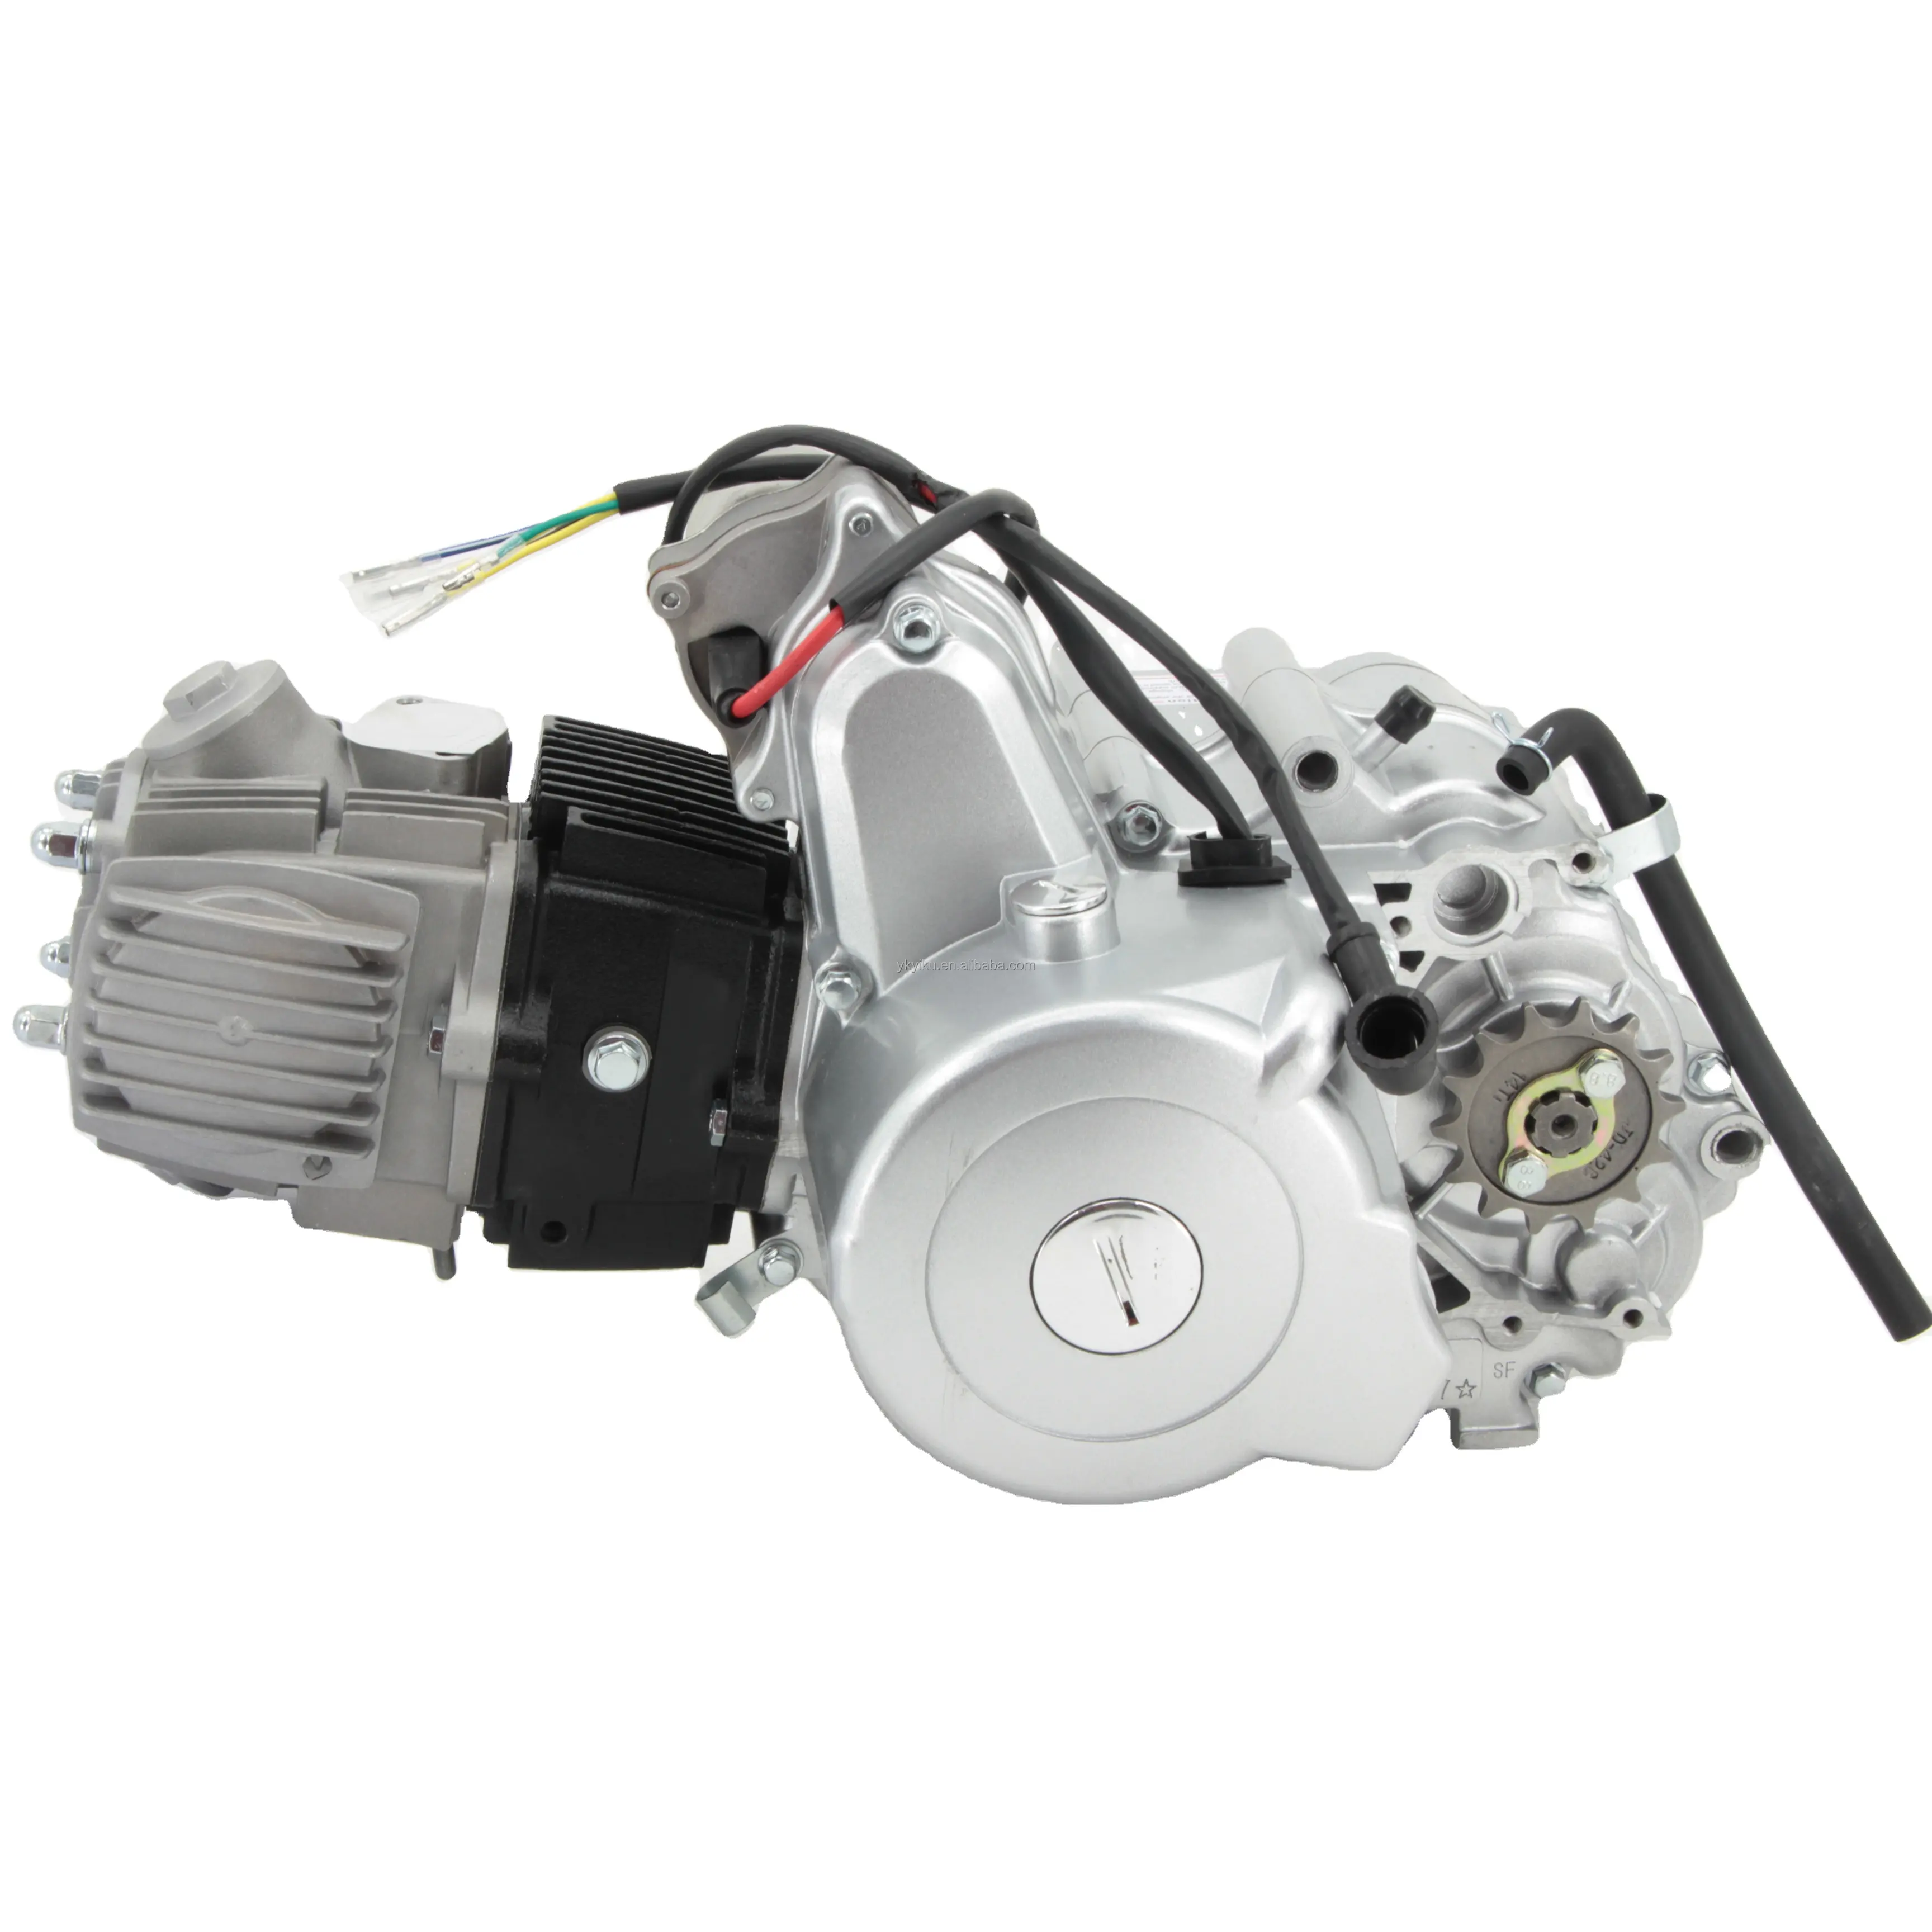 मोटरसाइकिल बिक्री के लिए CQHZJ उच्च गुणवत्ता 4 स्ट्रोक 70cc 110cc 150cc इंजन मोटर इलेक्ट्रिक स्टार्ट